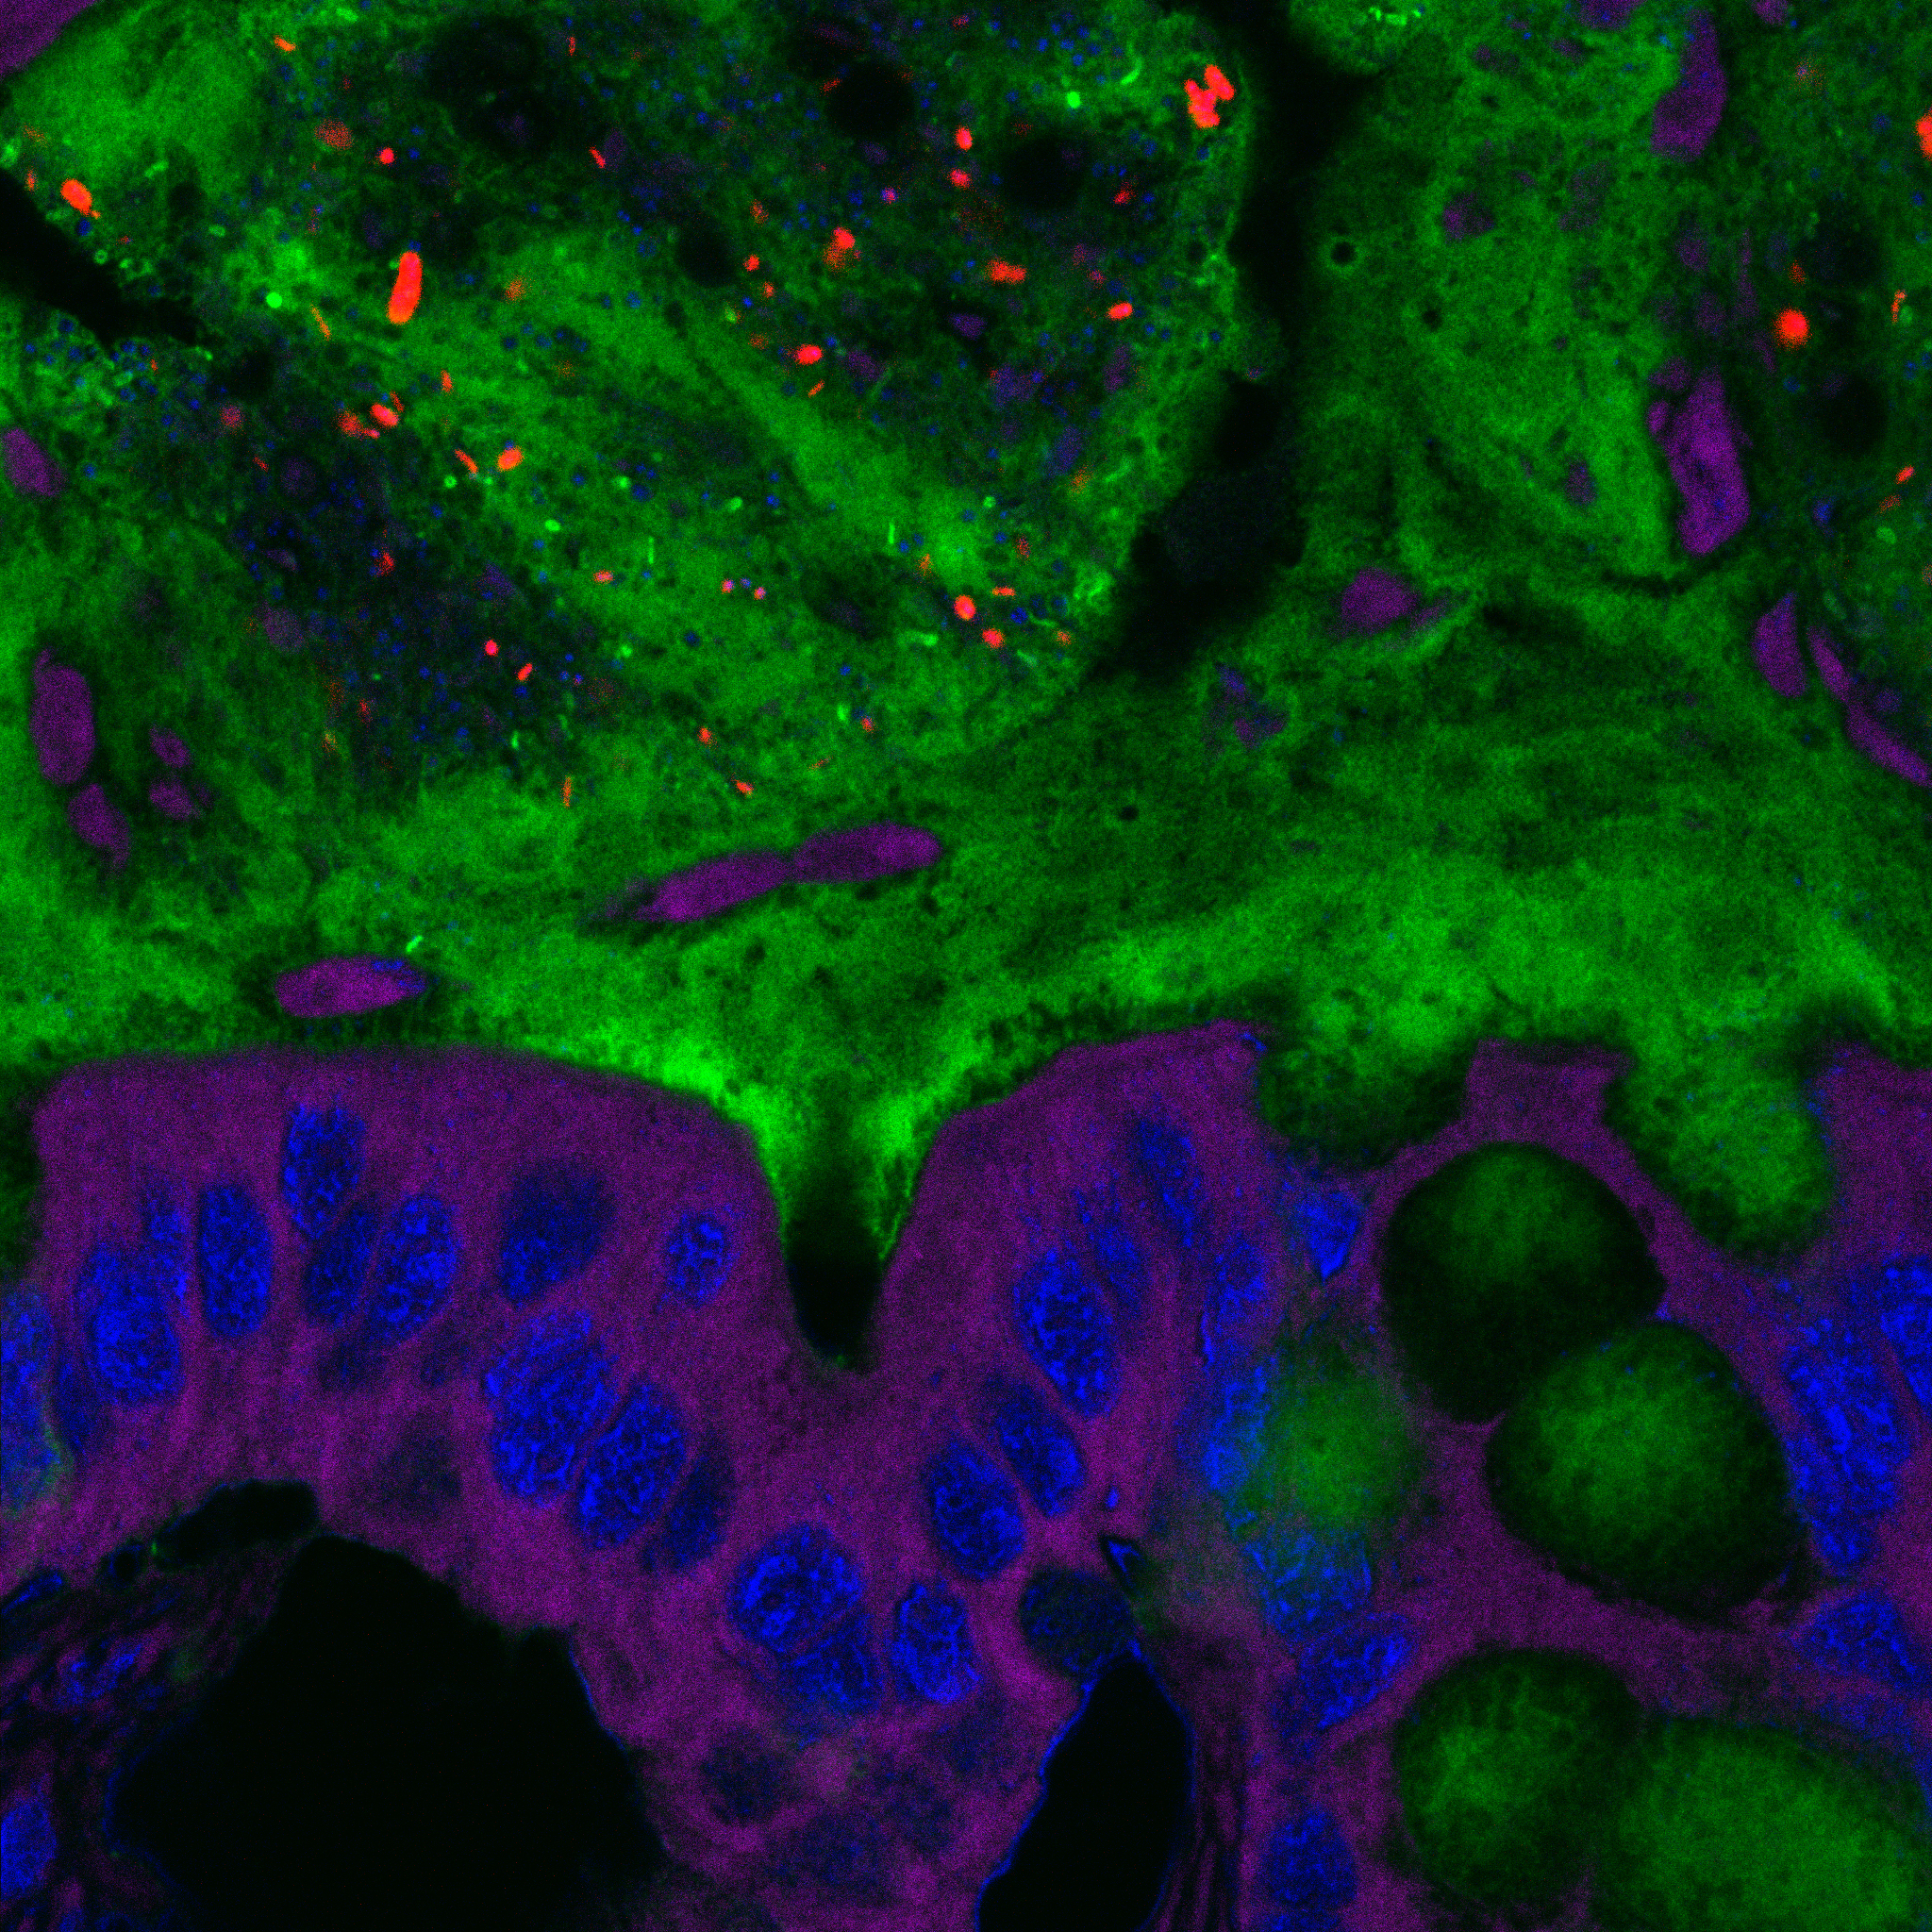 Bacterias en la capa de mucosidad del intestino, más cerca de las células epiteliales de lo que deberían. Imagen: Benoit Chassaing. Fuente: Universidad del Estado de Georgia.